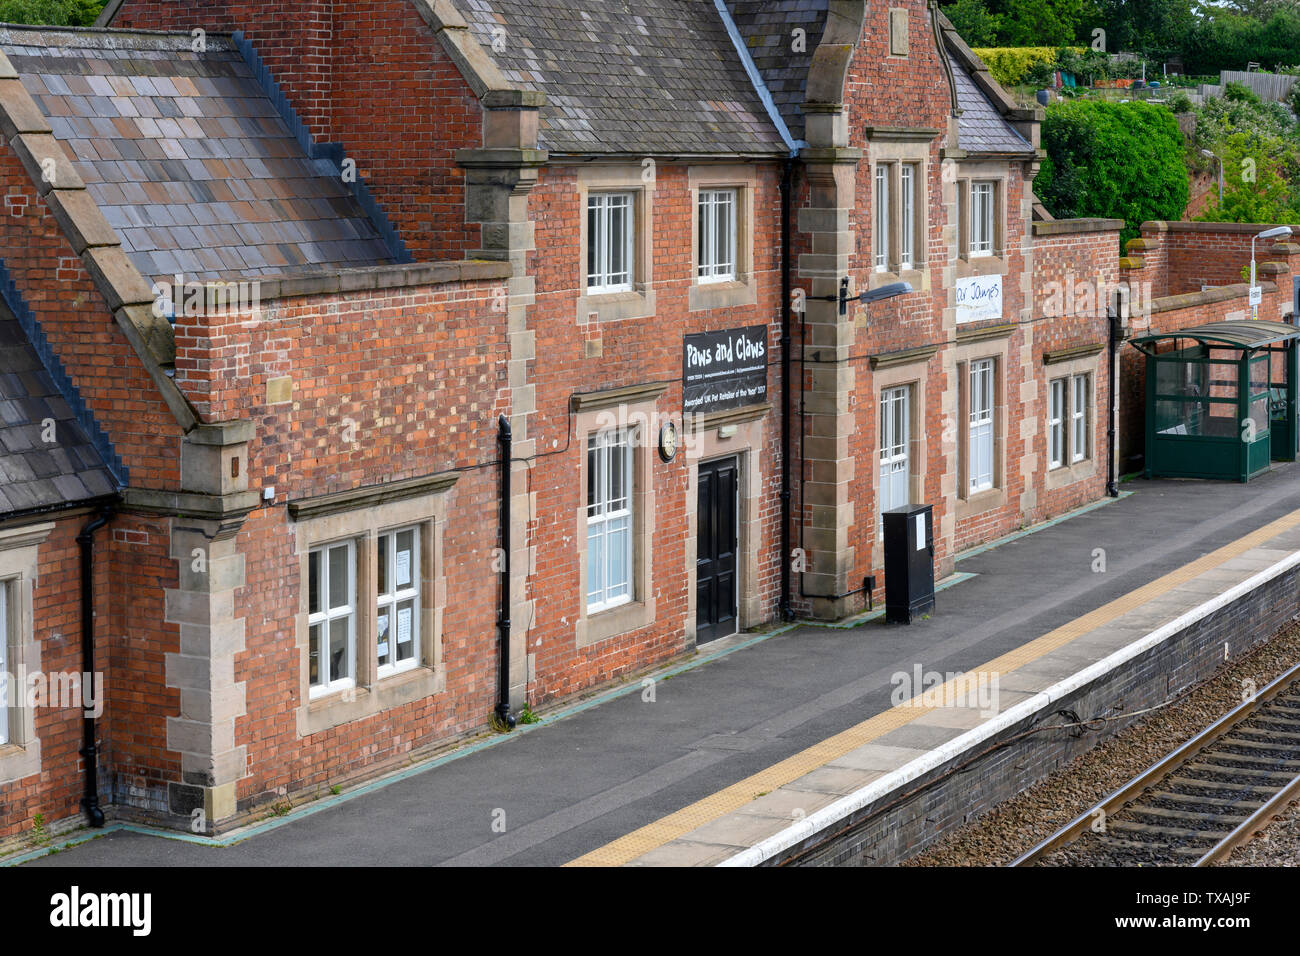 British Rail Station Frodsham, Cheshire, England, UK Stock Photo